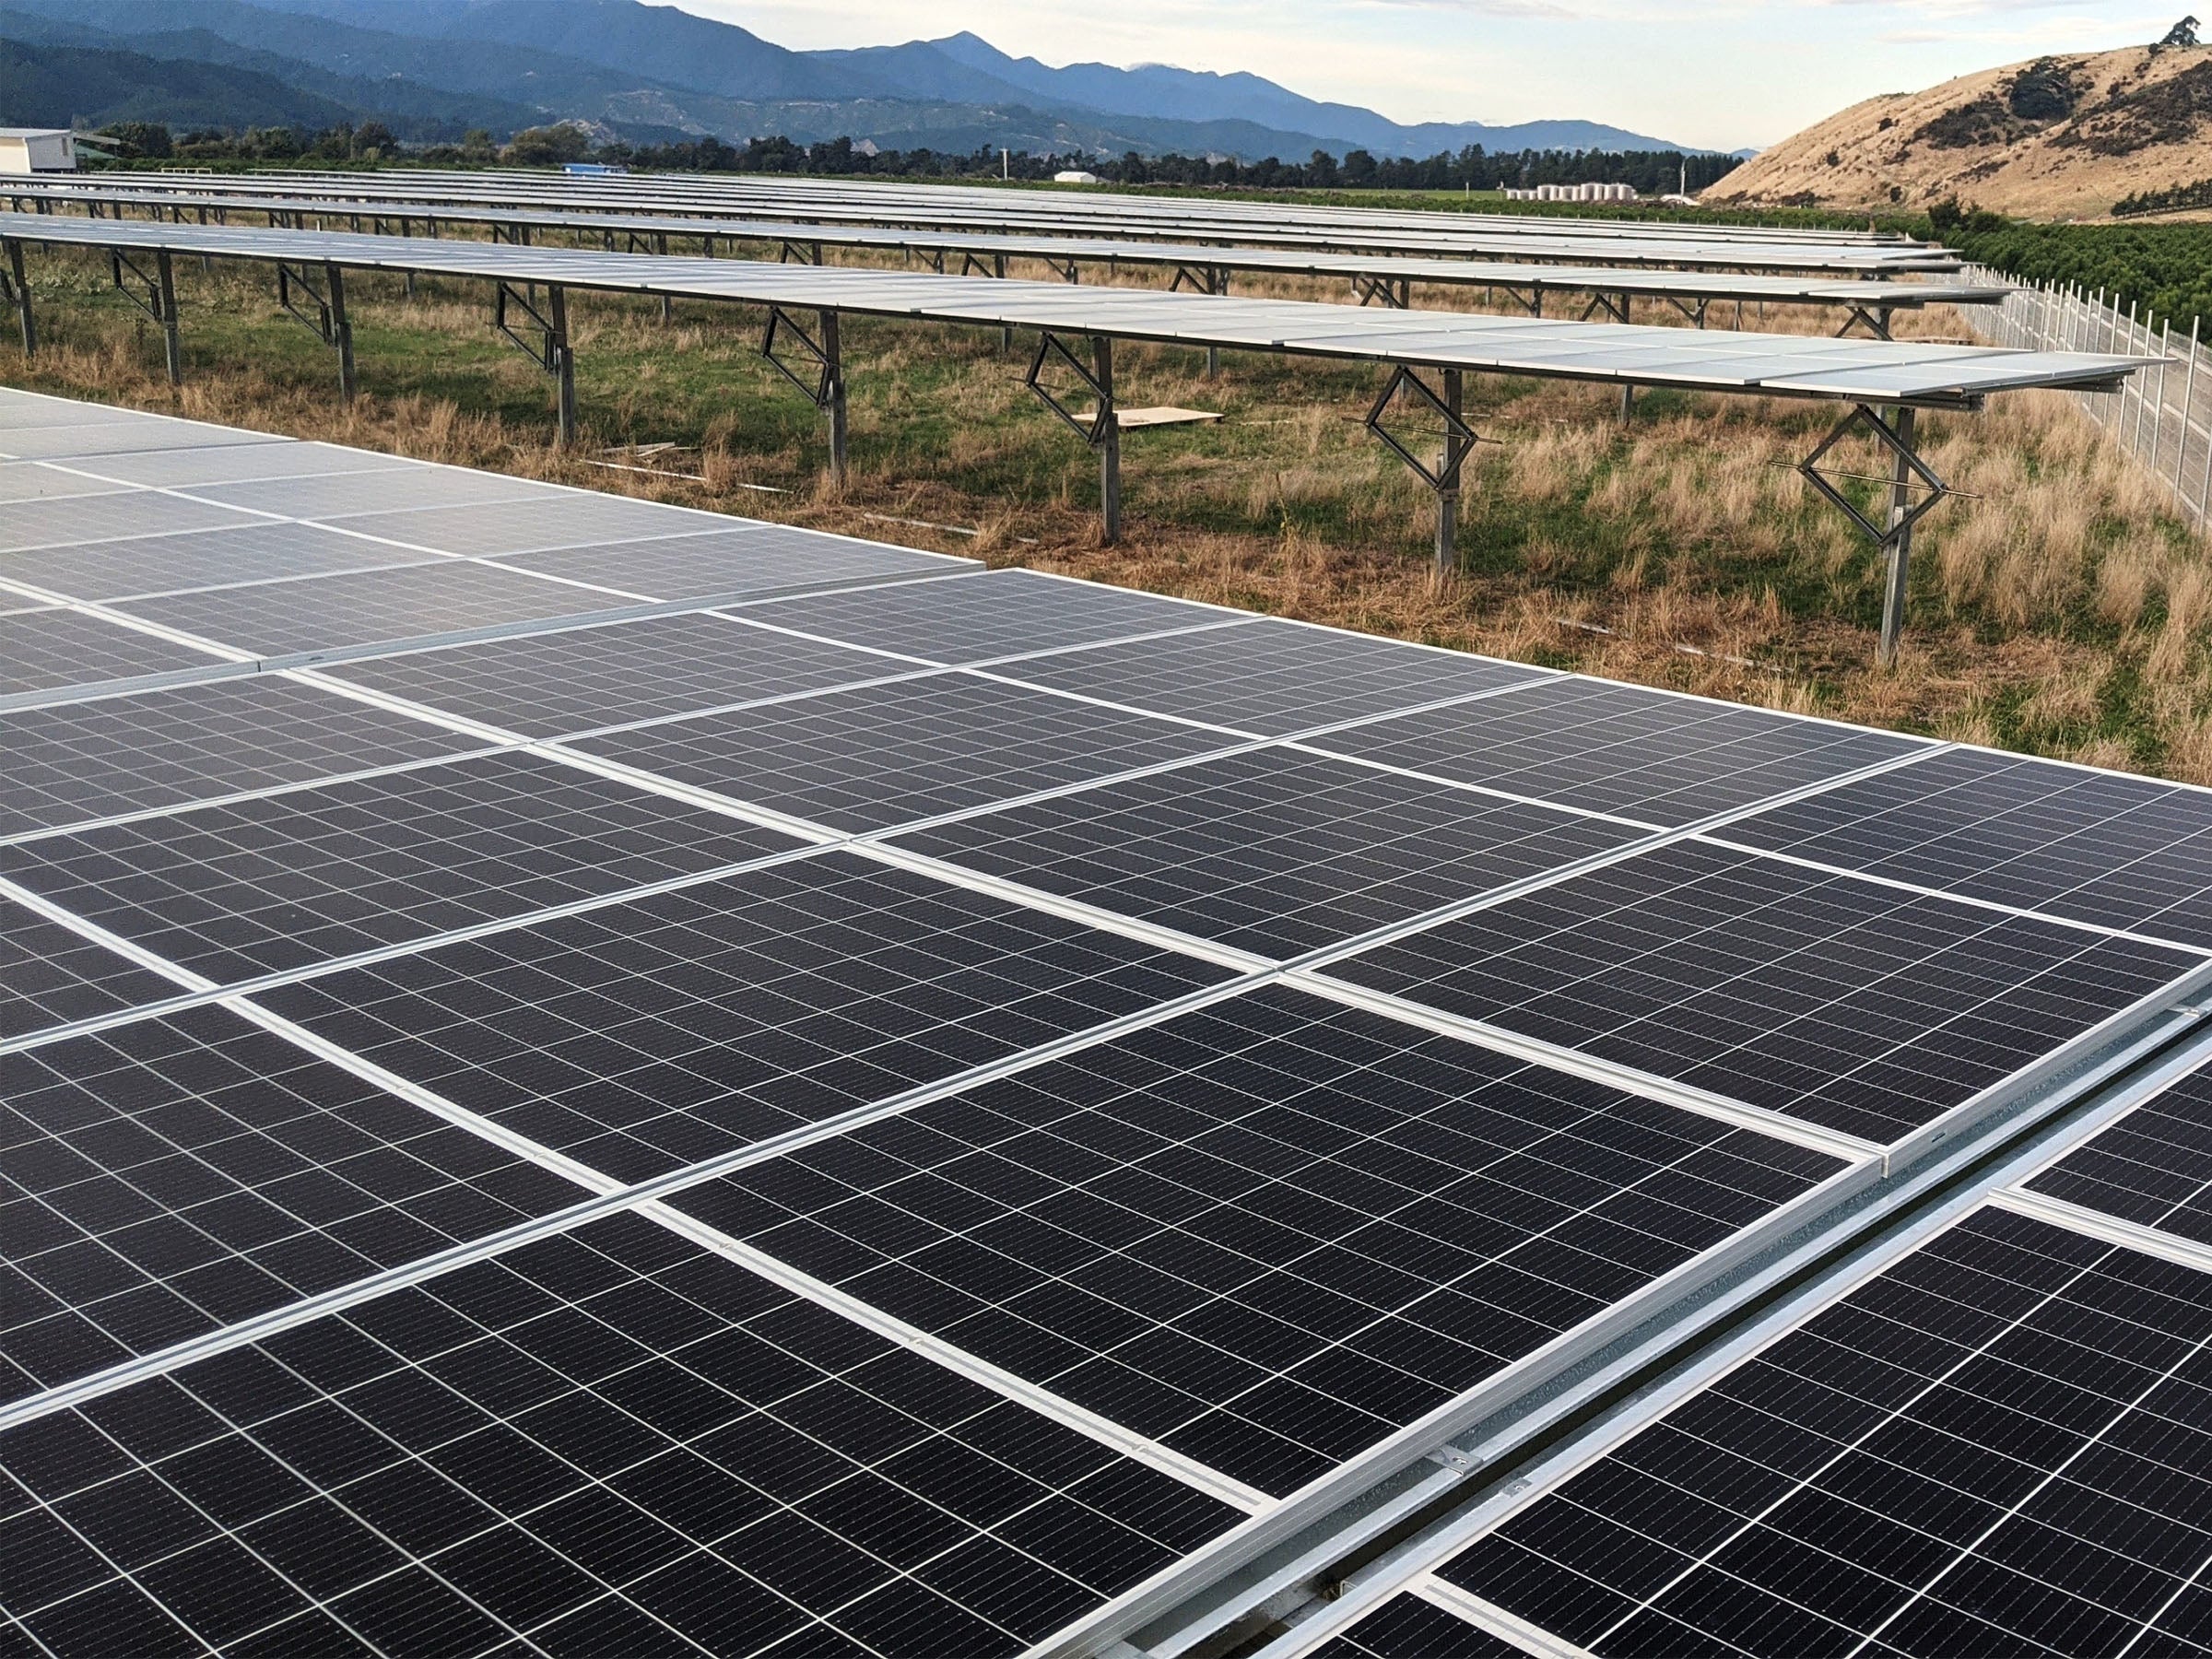 #Solarstrom: Deutsche bauen schneller als gedacht